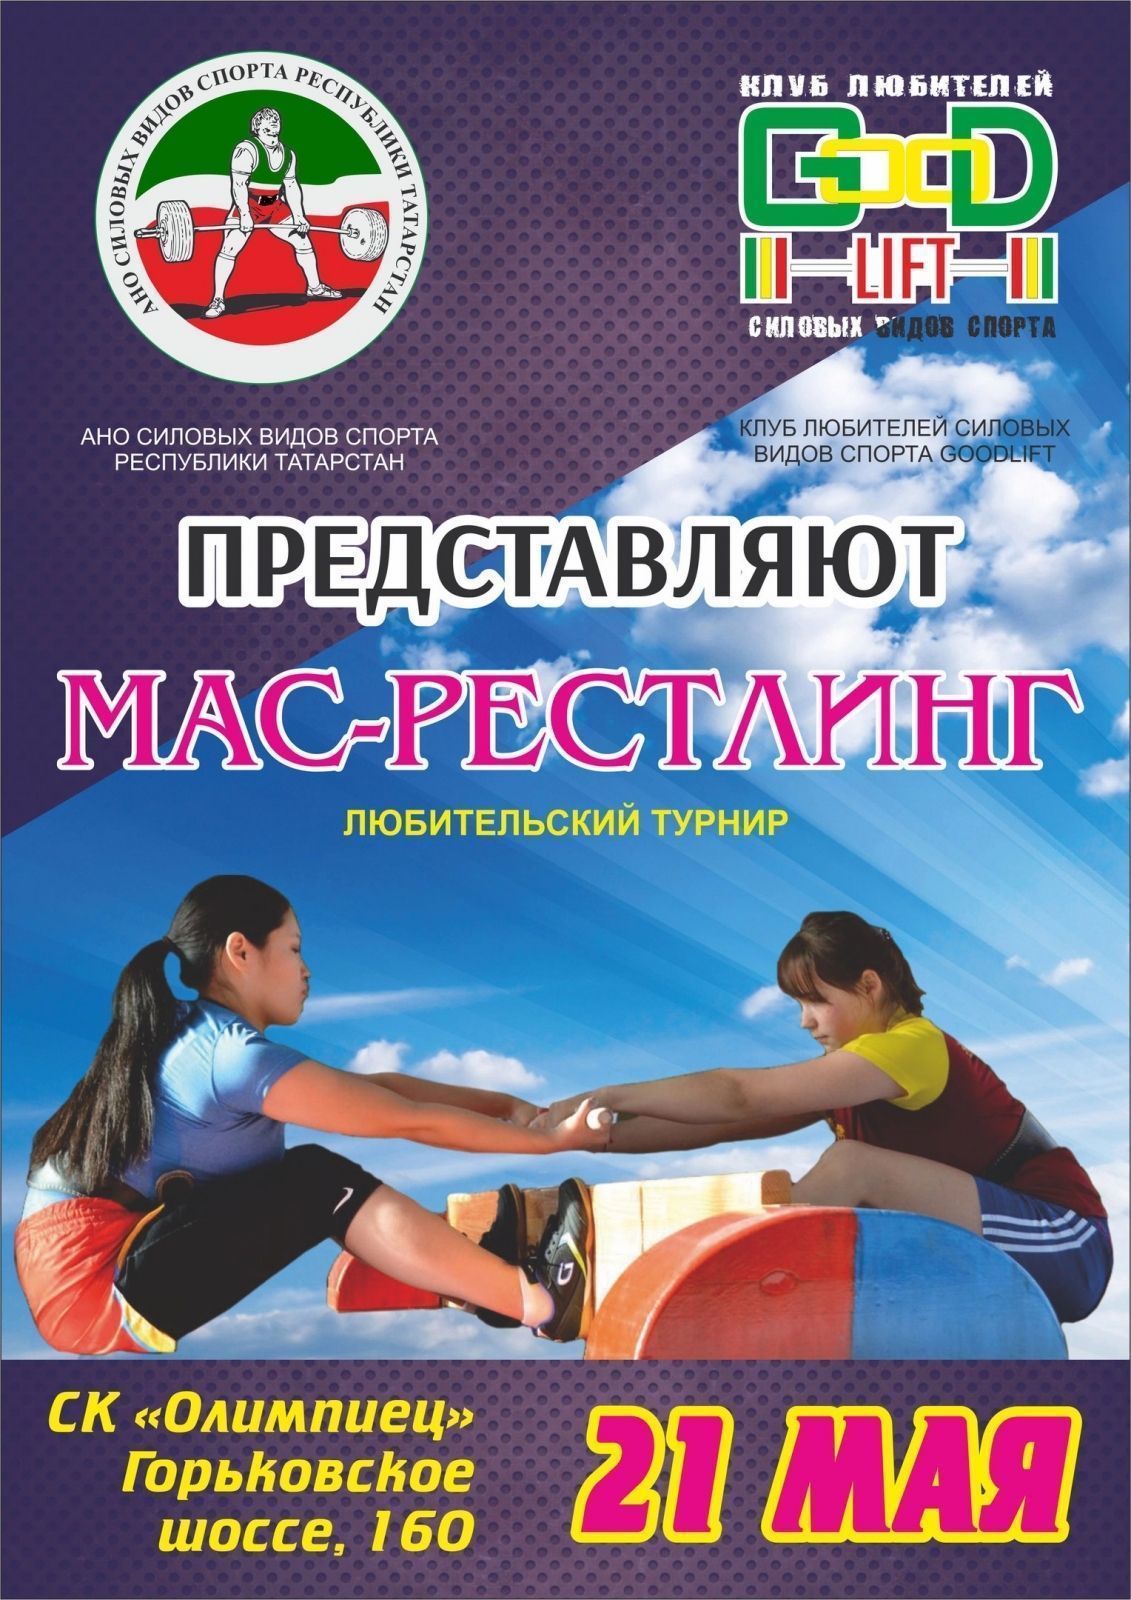 Первый в истории Республики Татарстан любительский турнир по мас-рестлингу